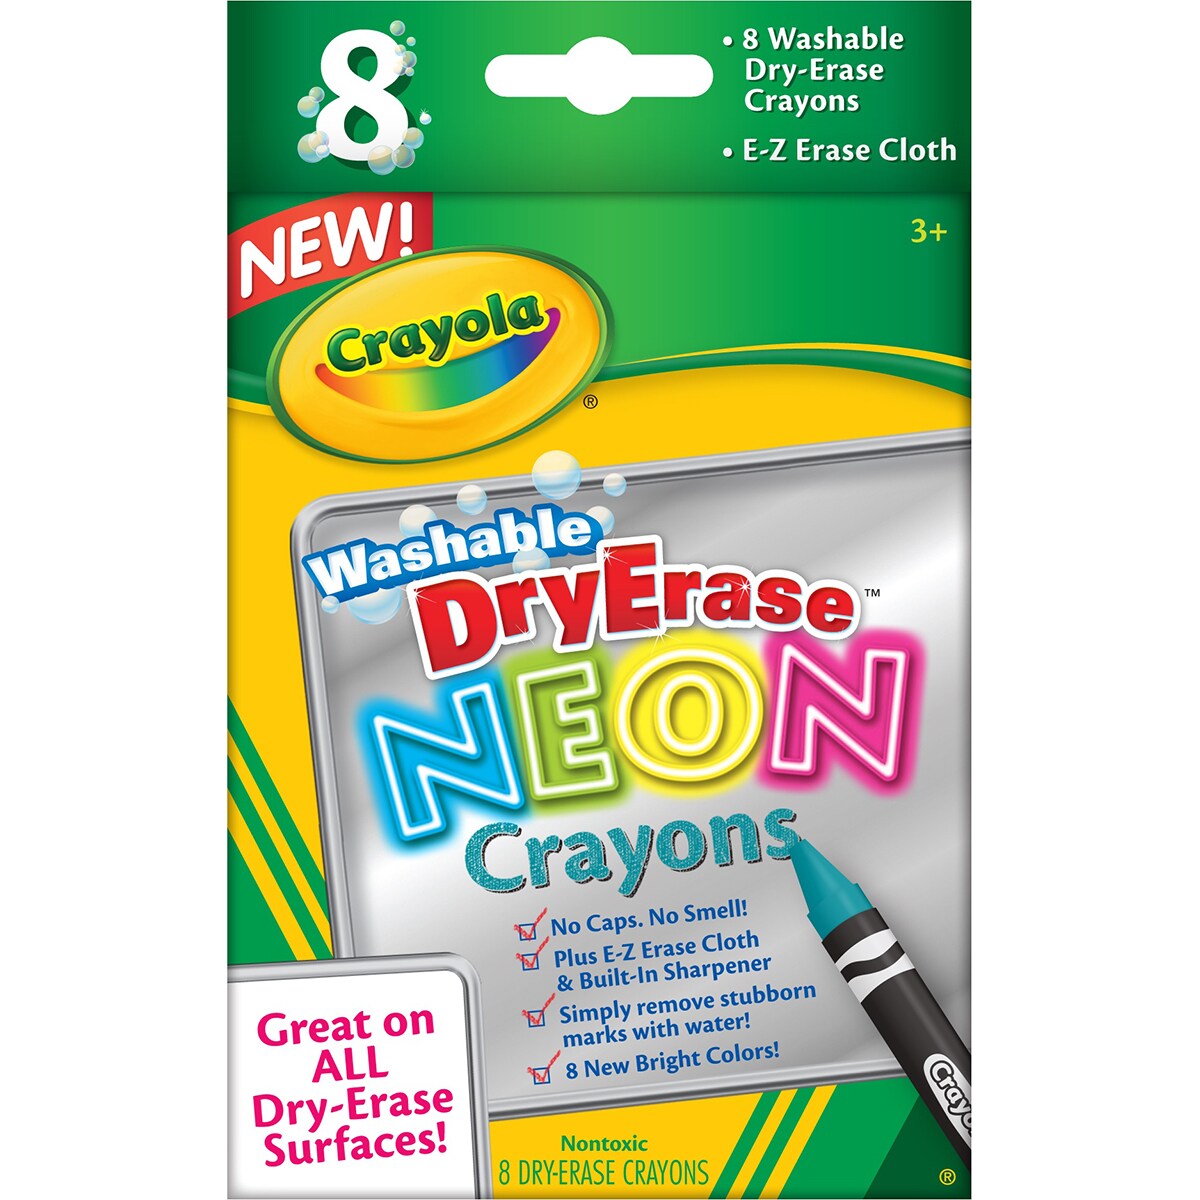 Crayola Neon Crayons 8 Count Neon Crayons Back to School Supplies, Arts &  Crafts